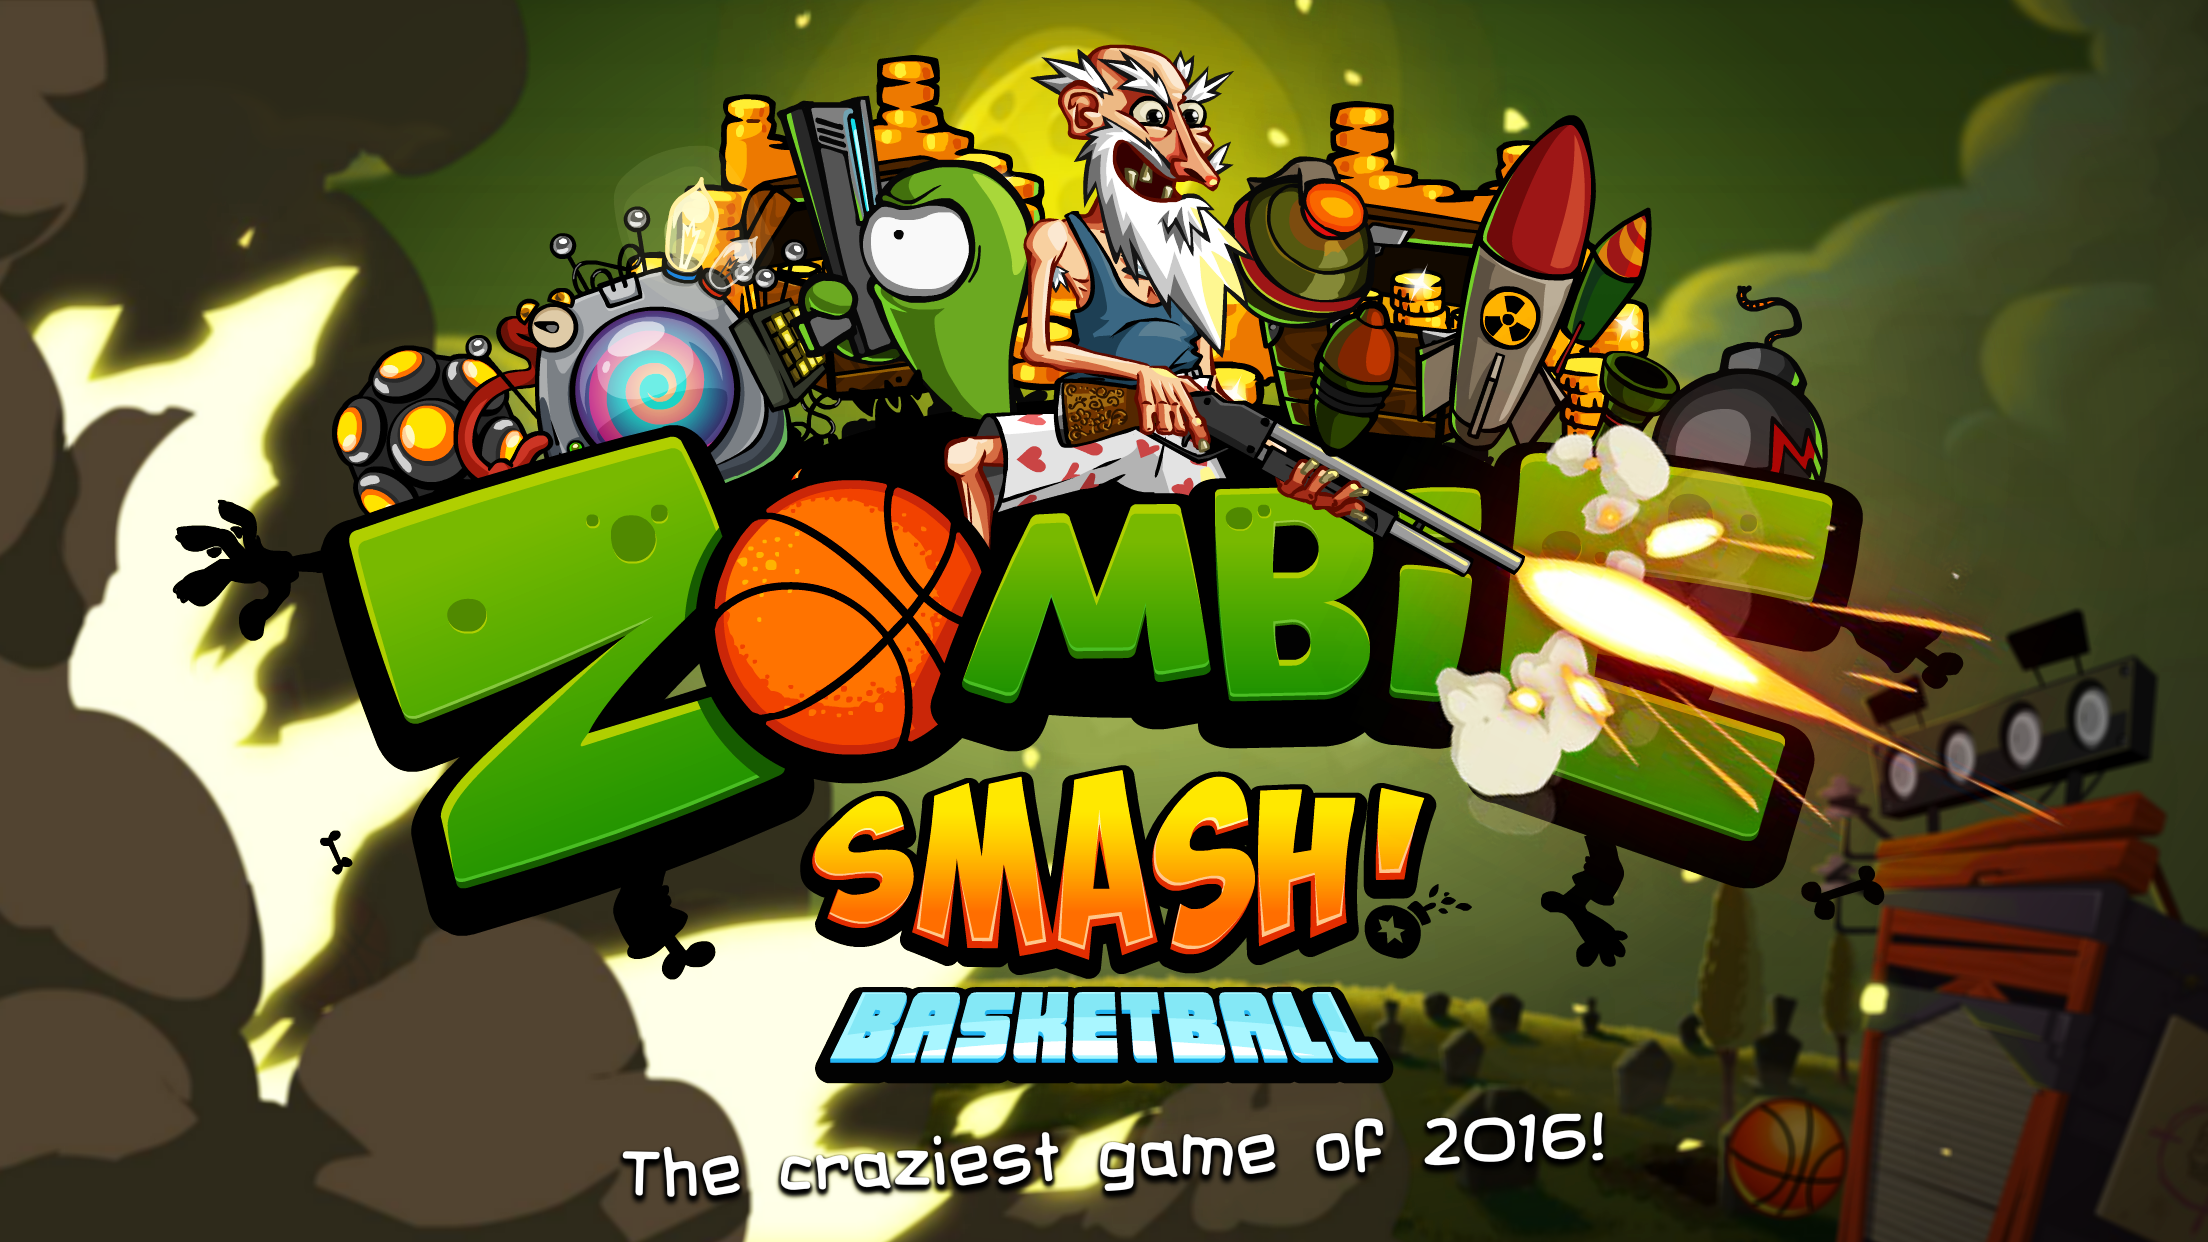 Игра зомби баскетбол. Игра Zombie Smash. Zombie Smash Basketball. Игры зомби 8